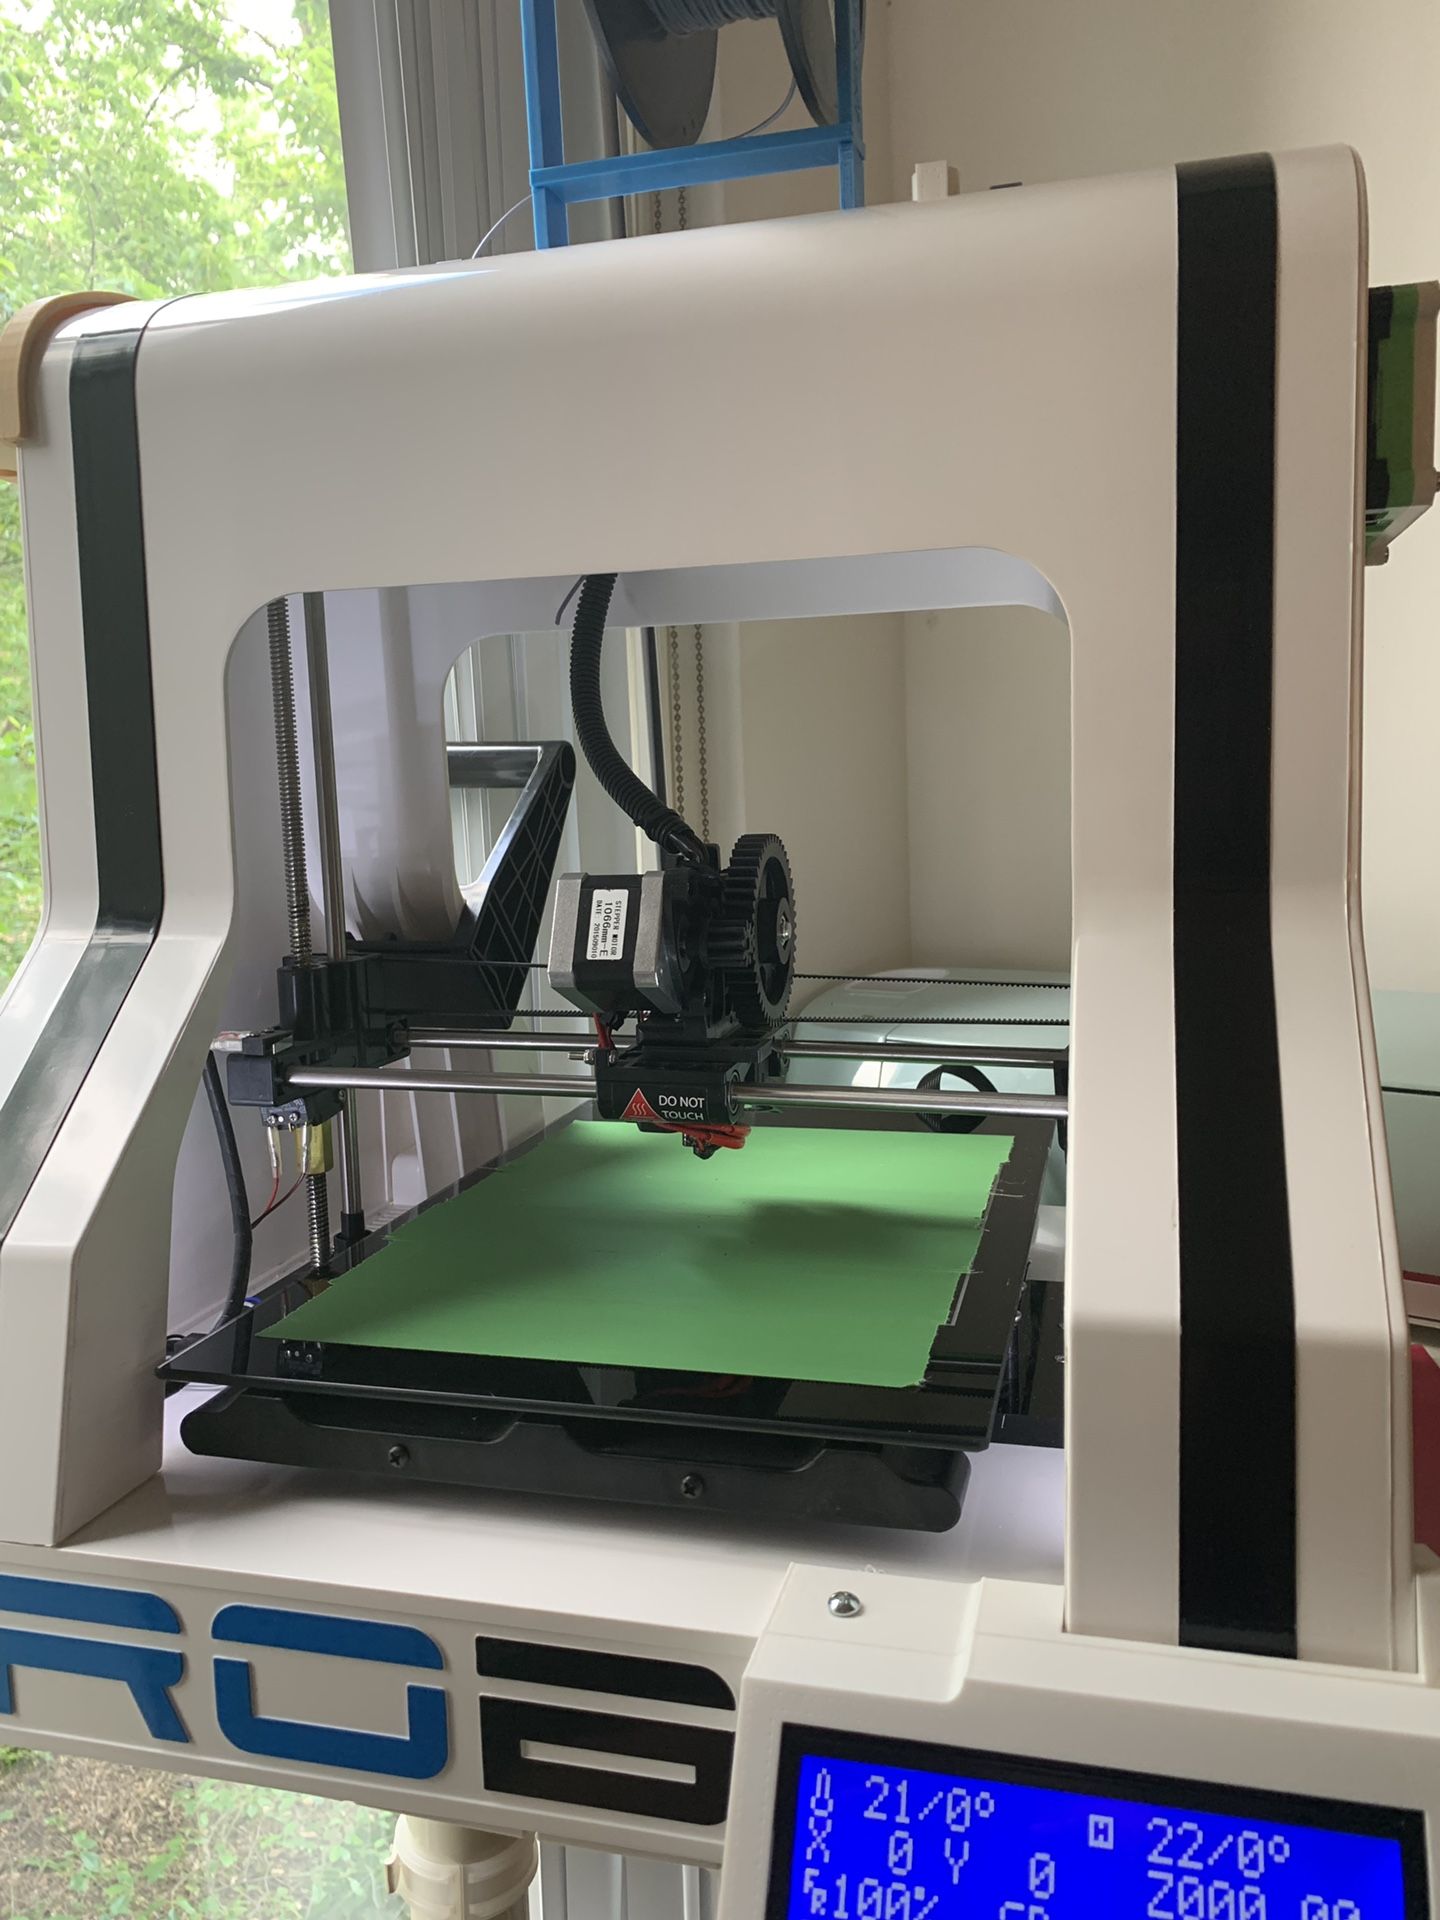 Robo R1 plus 3D printer with sd card